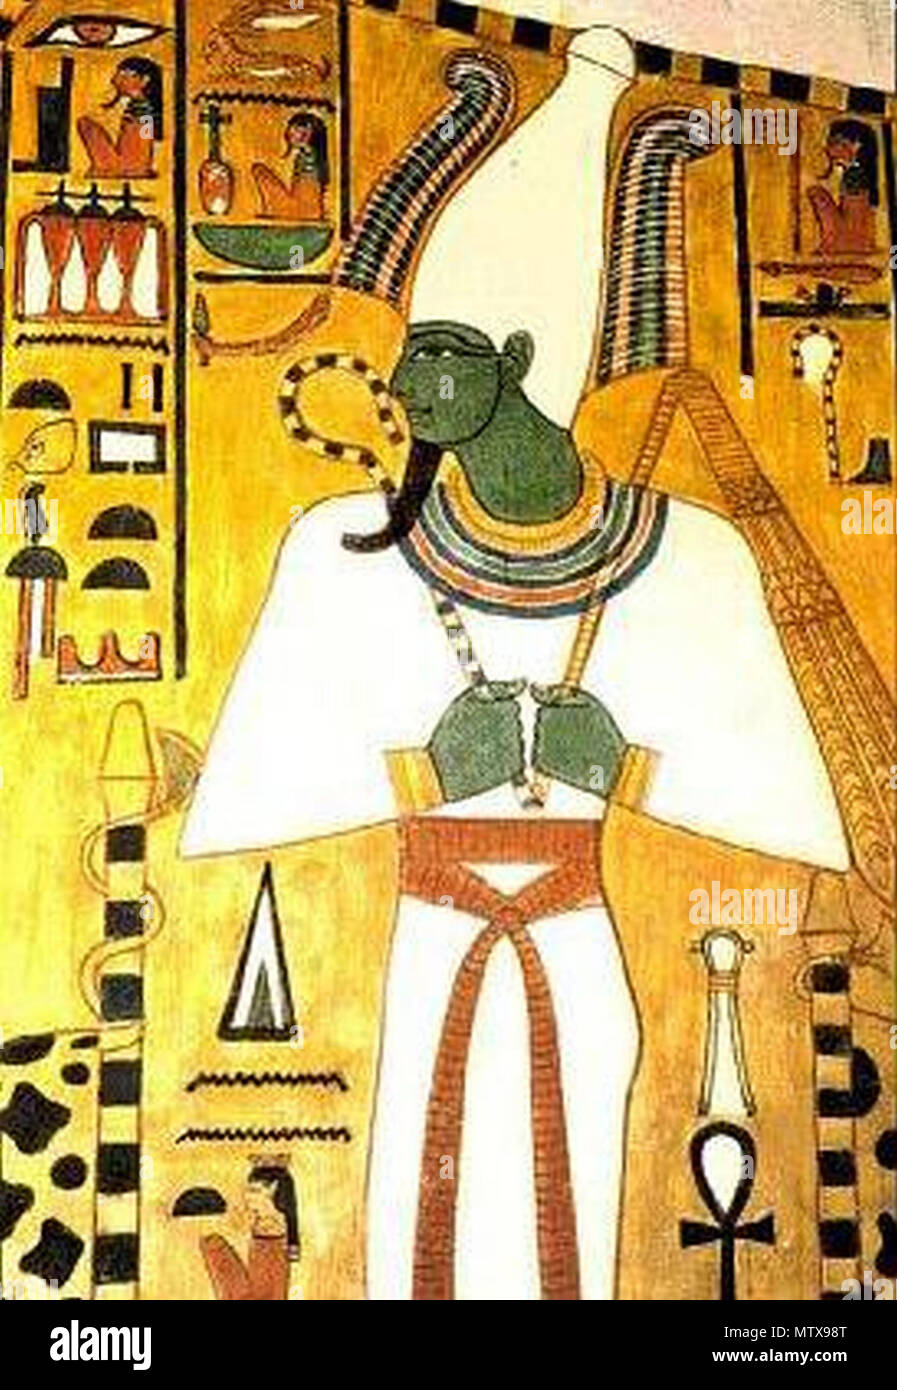 Dio egiziano osiris immagini e fotografie stock ad alta risoluzione - Alamy